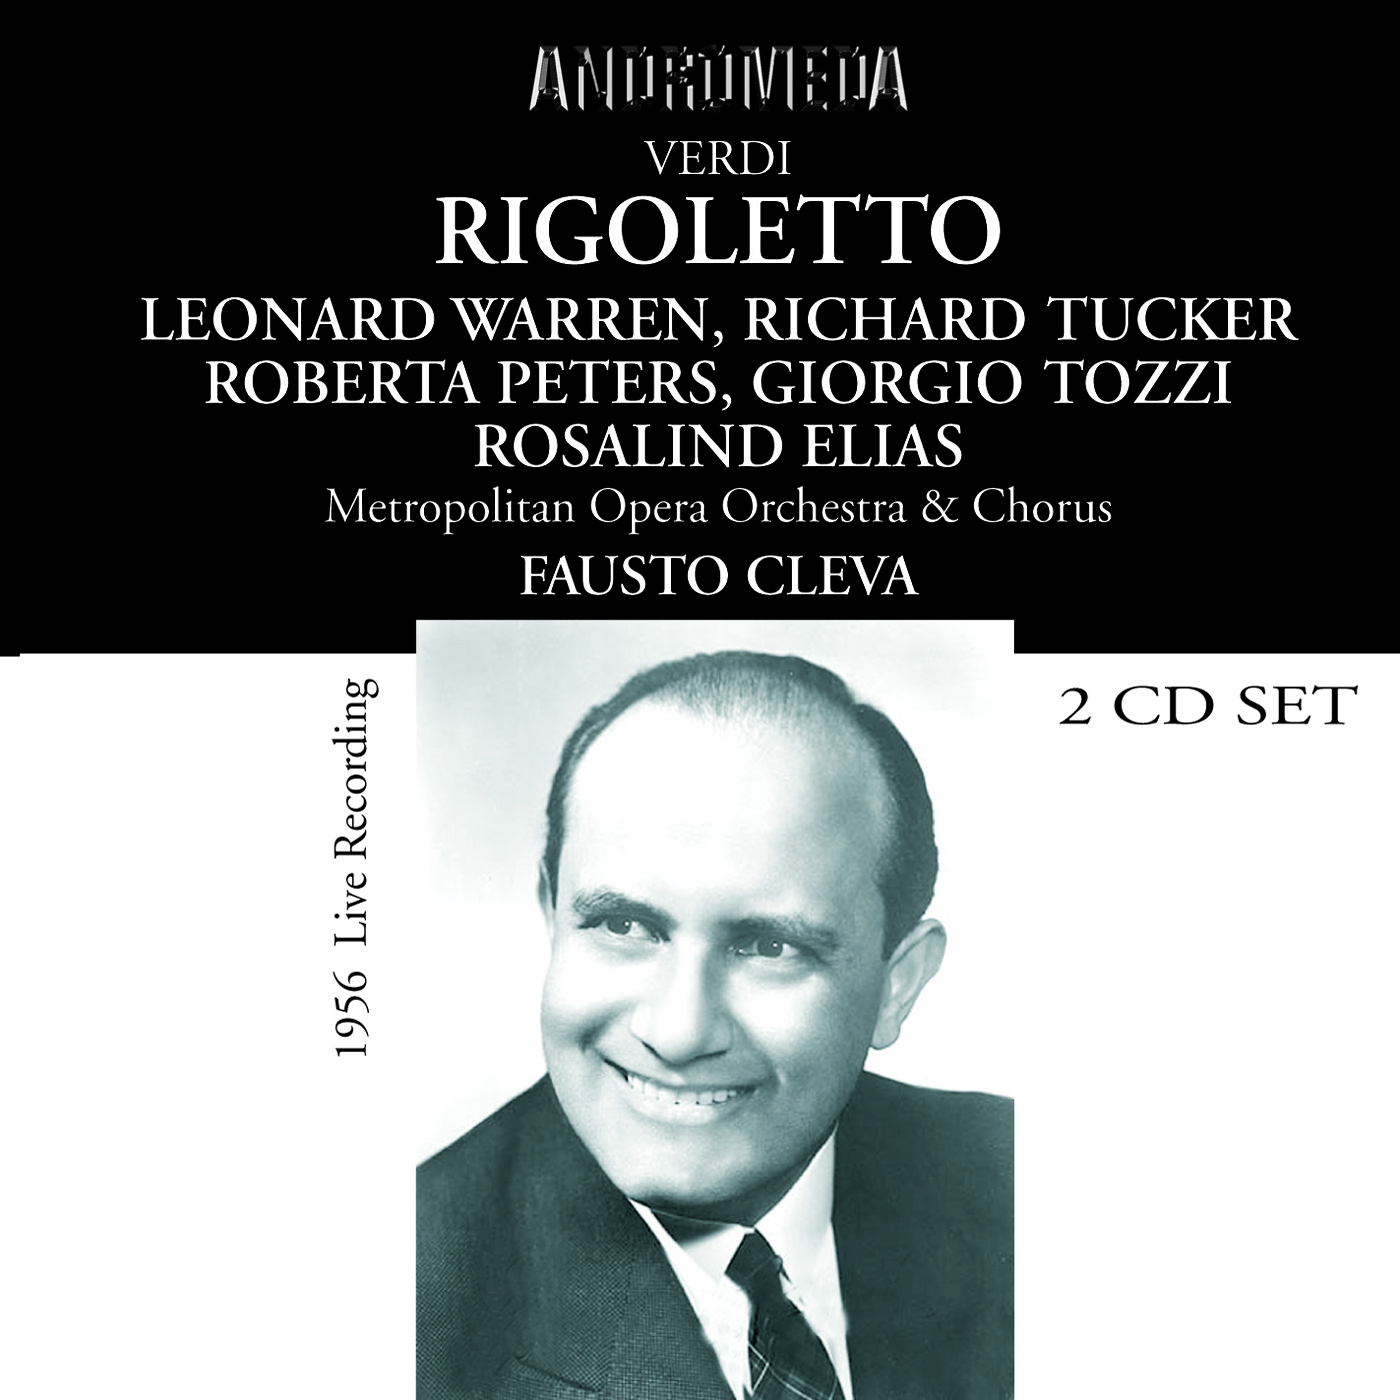 Rigoletto*: Act II: Compiuto pur quanto a fare mi resta (Rigoletto, Monterone, Gilda, Usher)